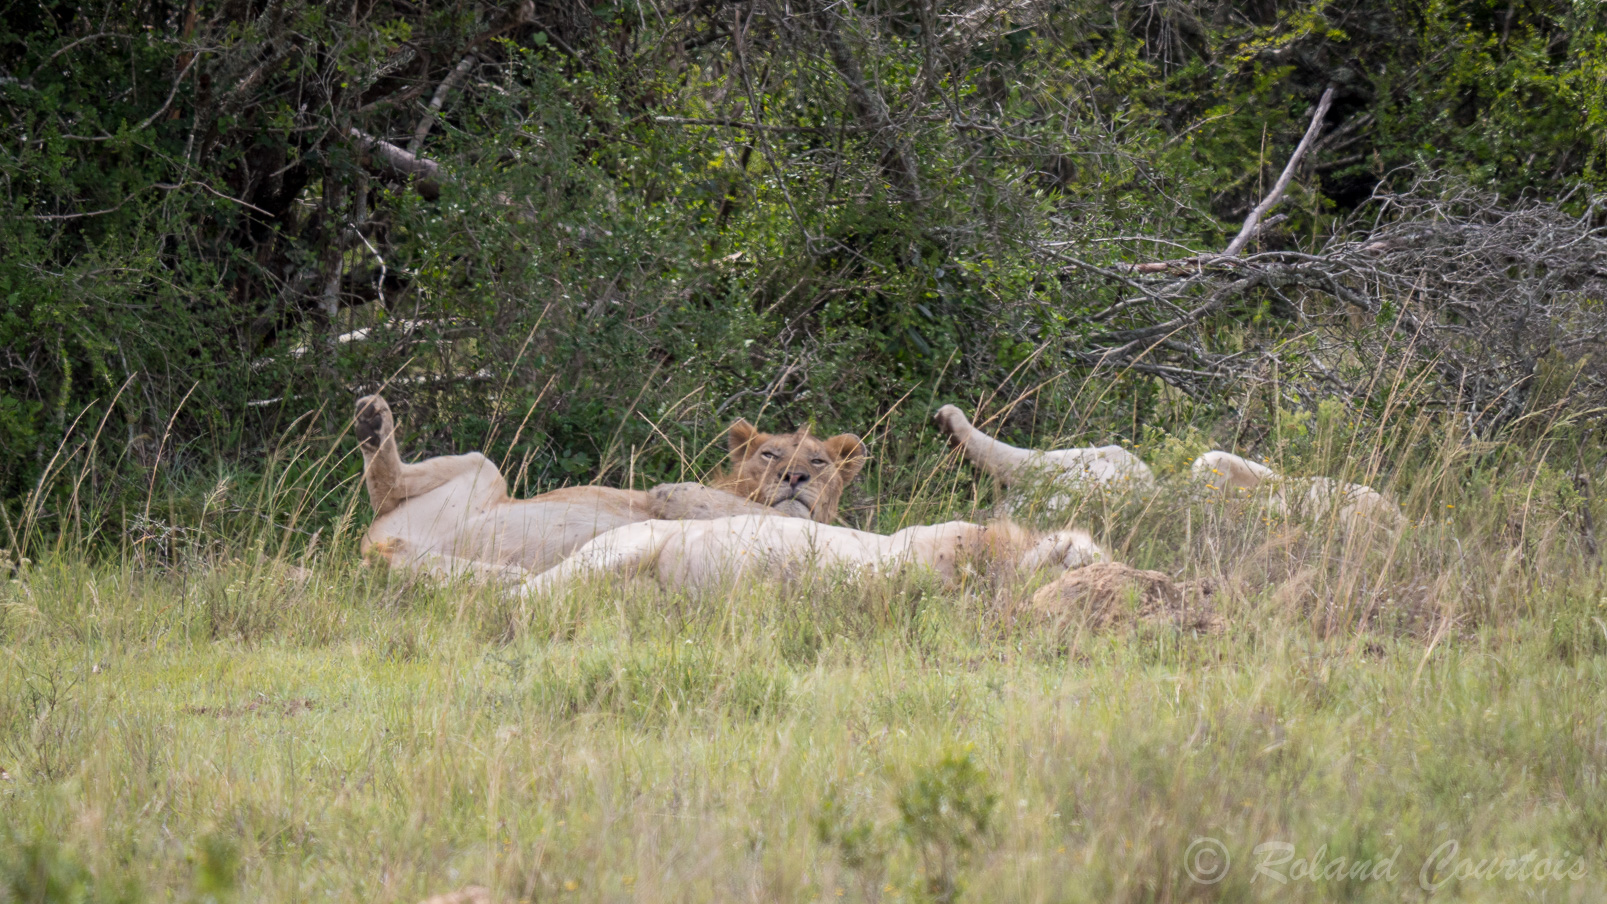 Une famille de Lions Blancs en pleine sieste dans les hautes herbes. C'est une espèce très rare.